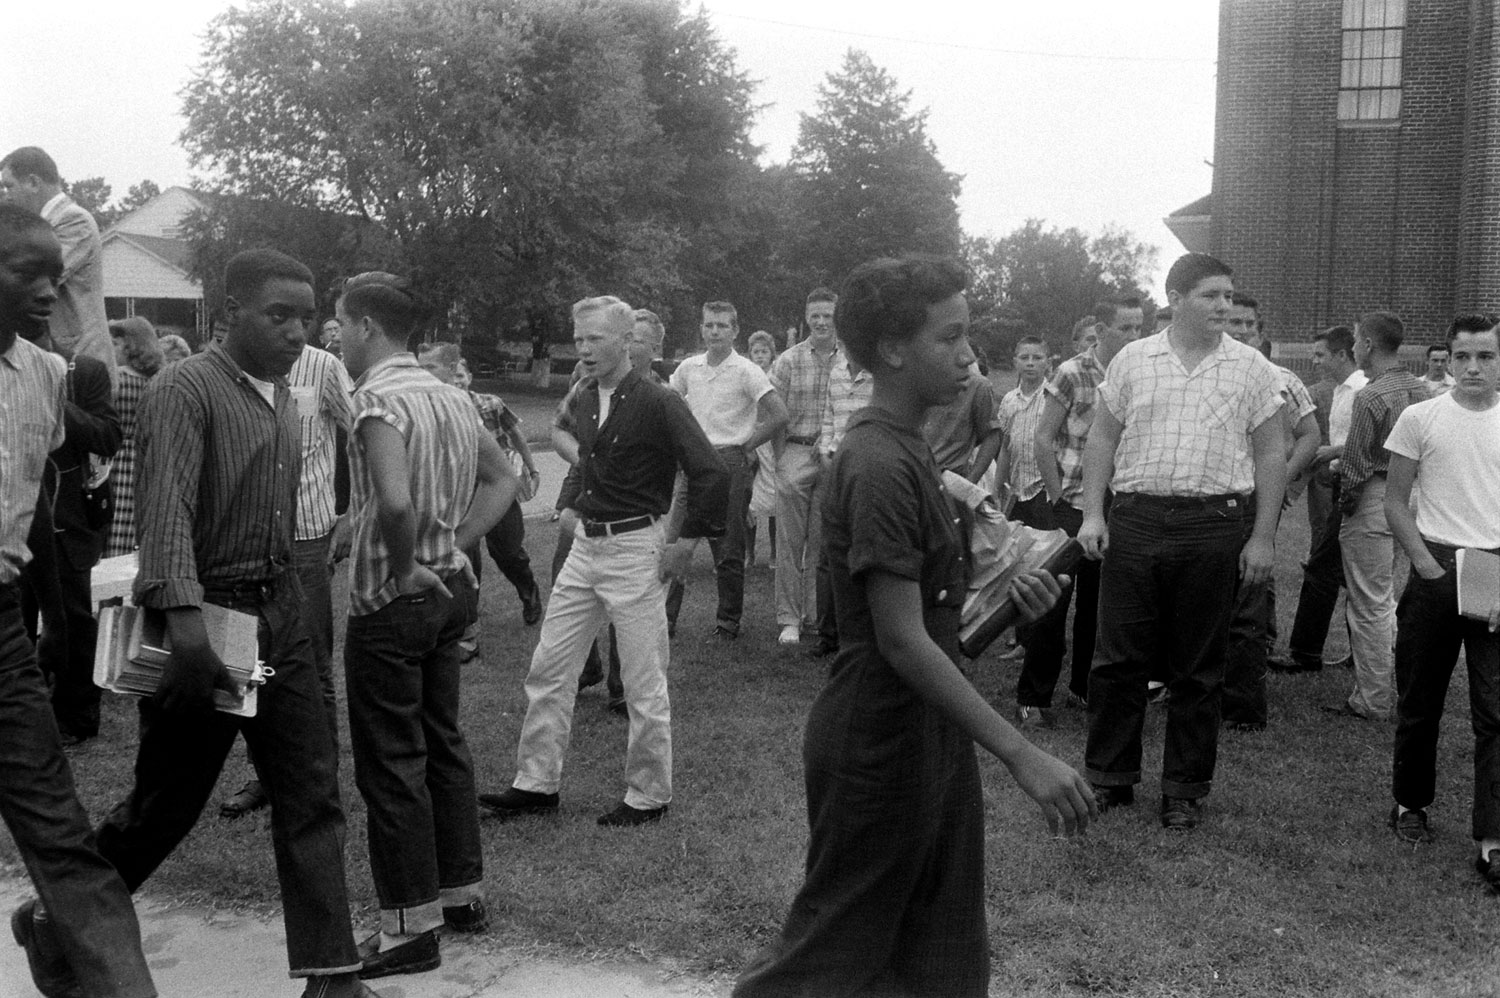 African-American students arrive at school in Van Buren, Arkansas, the year after the Little Rock Nine integrated Little Rock's public schools, September 1958.